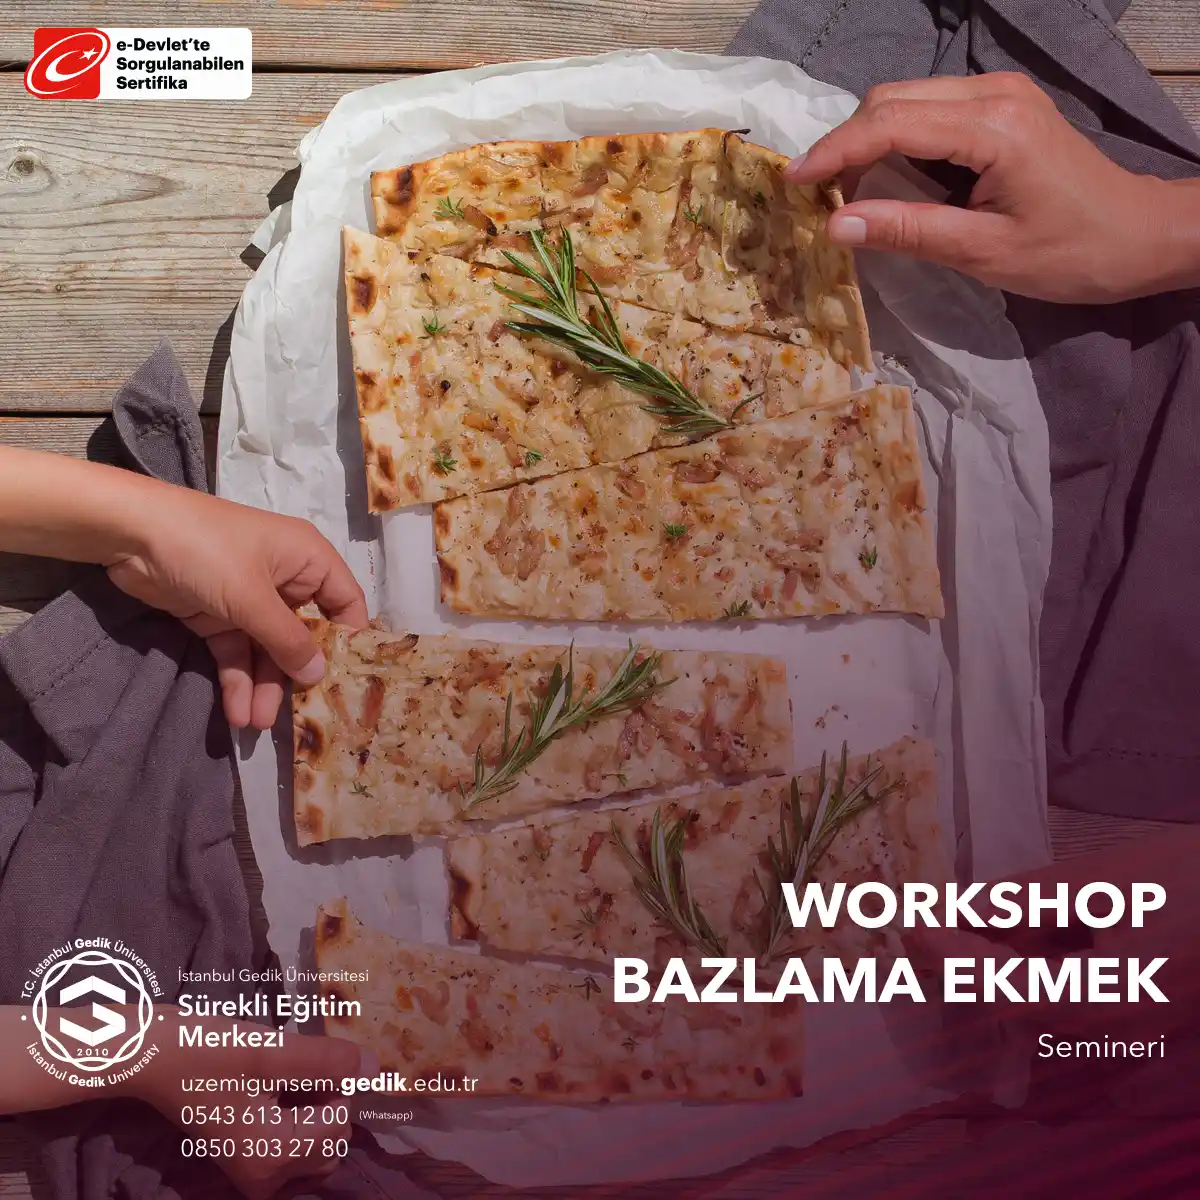 Bazlama ekmek yapımı workshop'u, ekmek severlerin bir araya gelerek, geleneksel Türk mutfağının lezzetli bir ekmeği olan bazlamanın nasıl yapıldığını öğrenmek için düzenlenen interaktif bir etkinliktir.